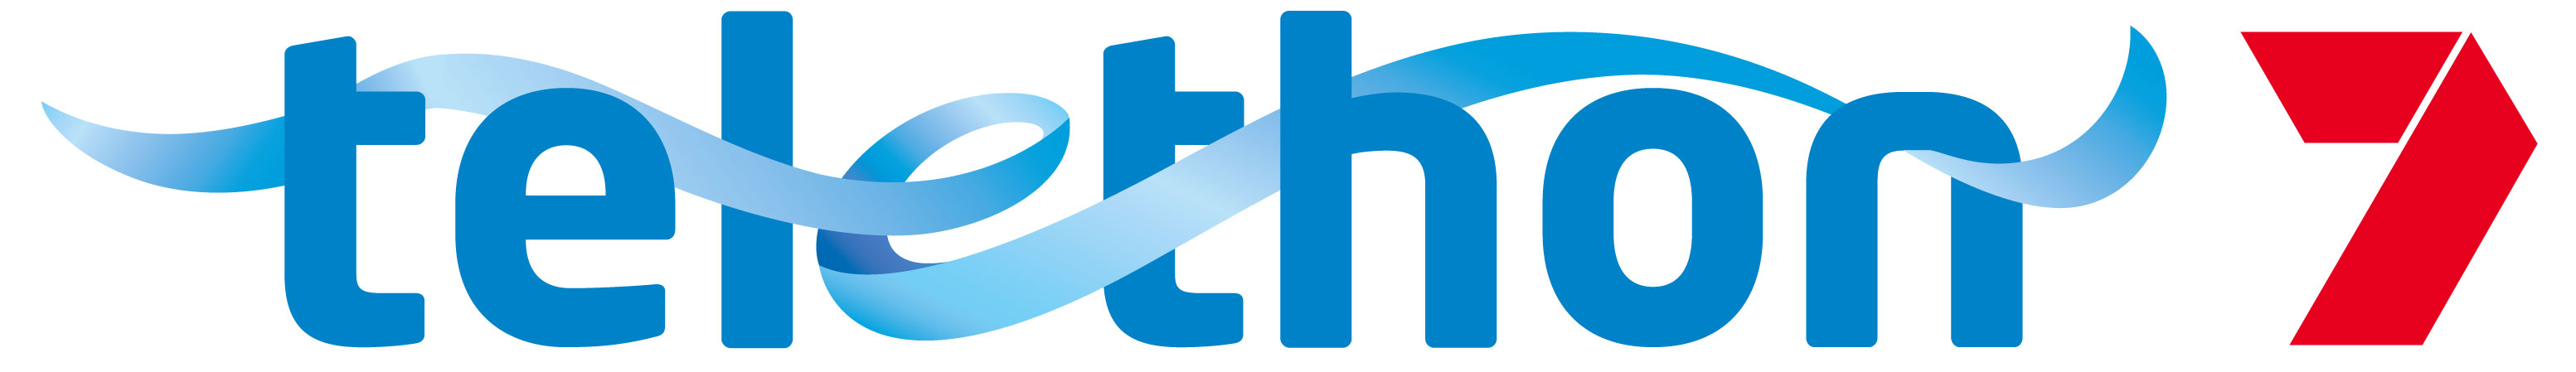 Telethon logo